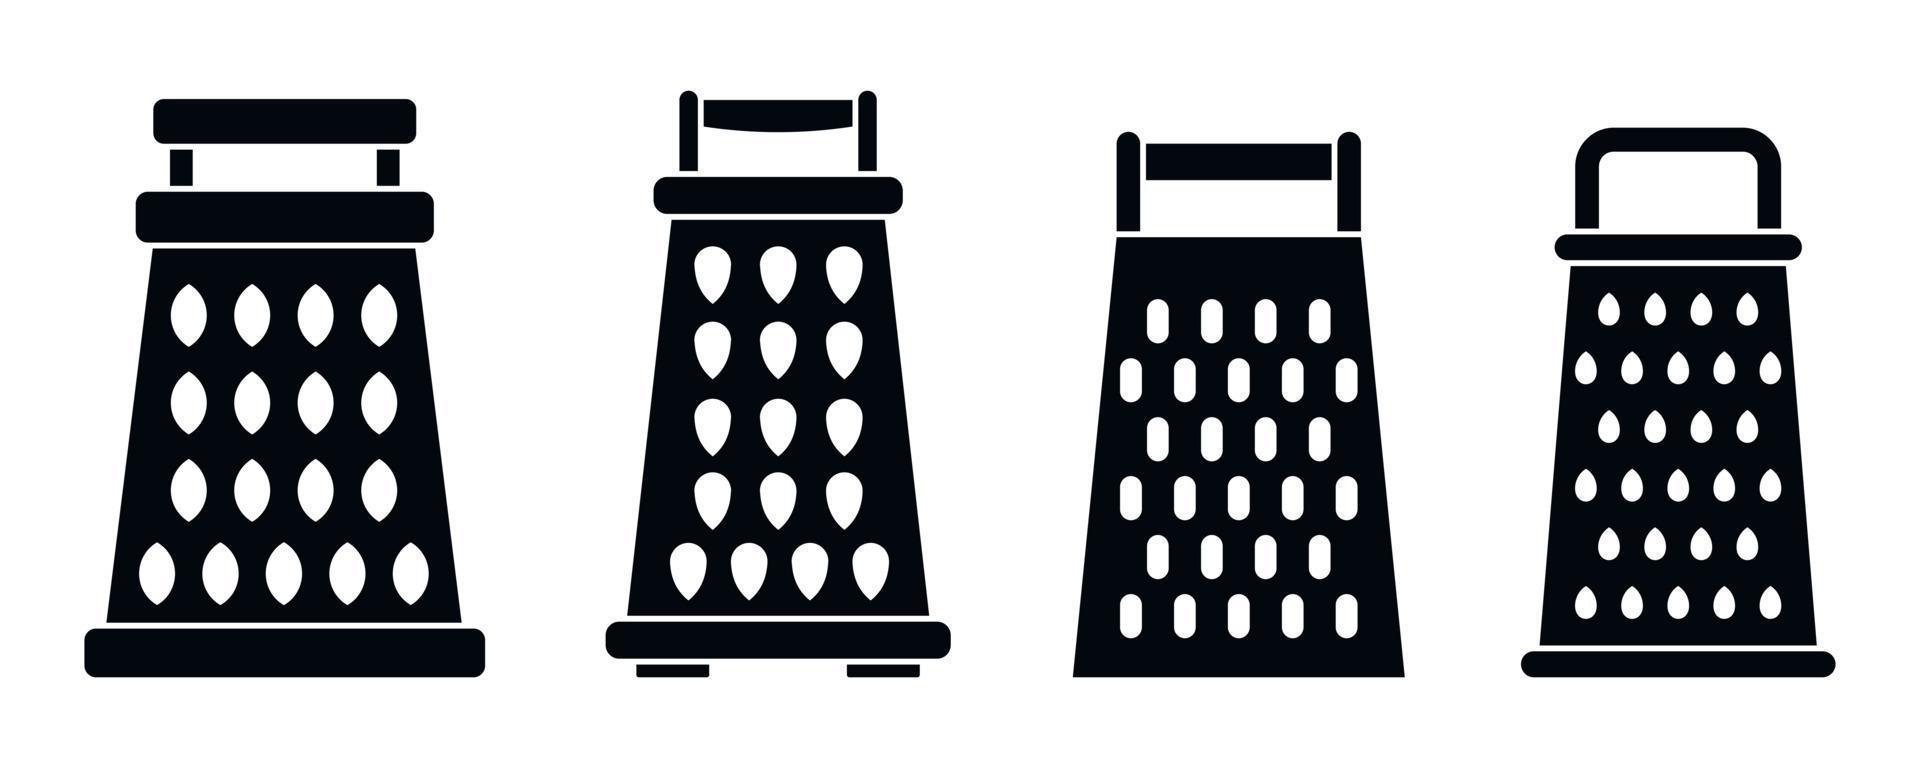 conjunto de iconos de rallador de cocina, estilo simple vector